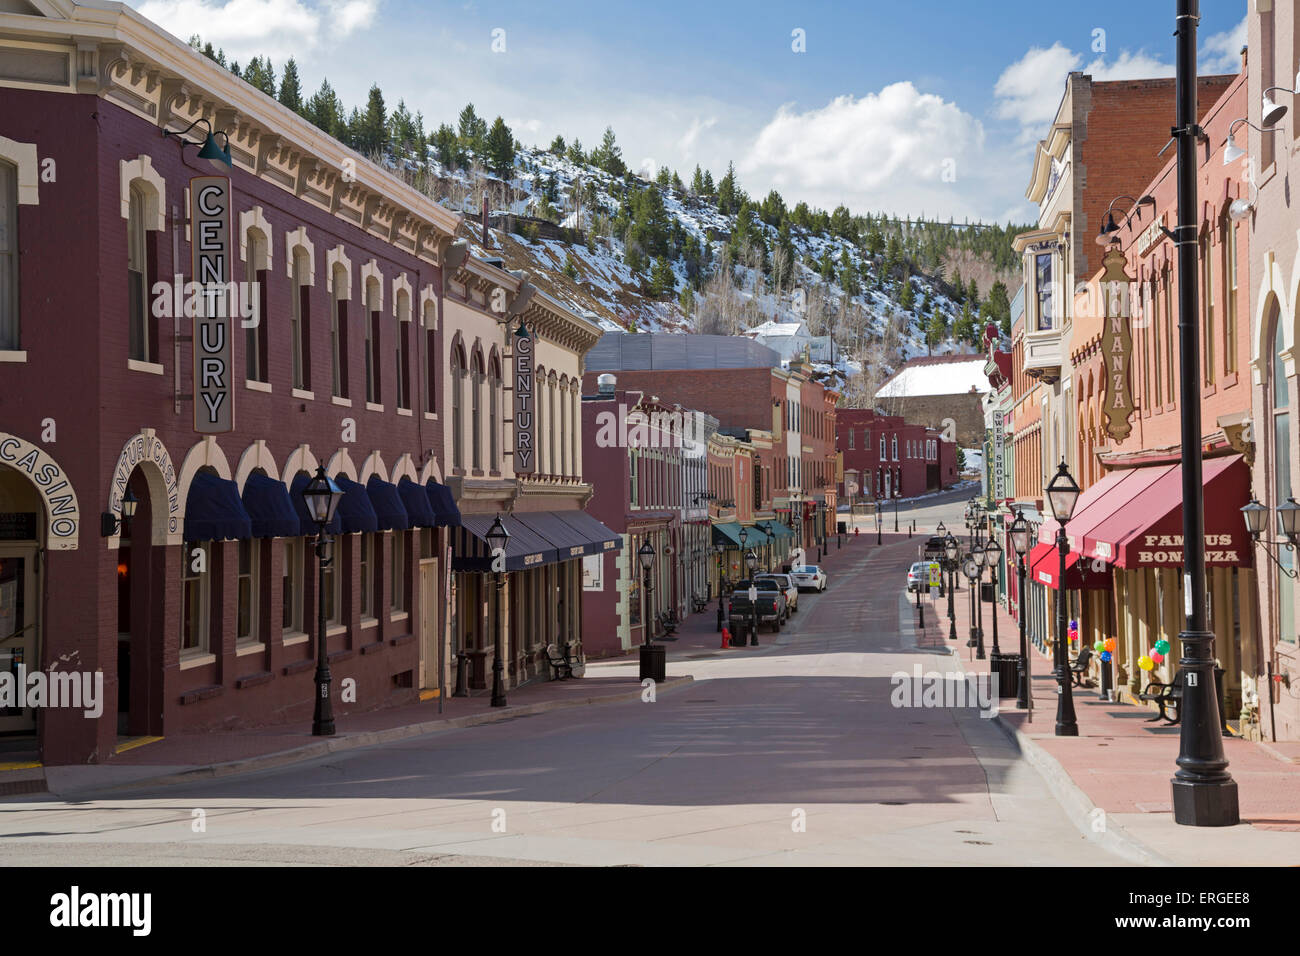 Central City, Colorado - una calle en el distrito histórico del centro de la ciudad, ubicado en las montañas al oeste de Denver. Foto de stock